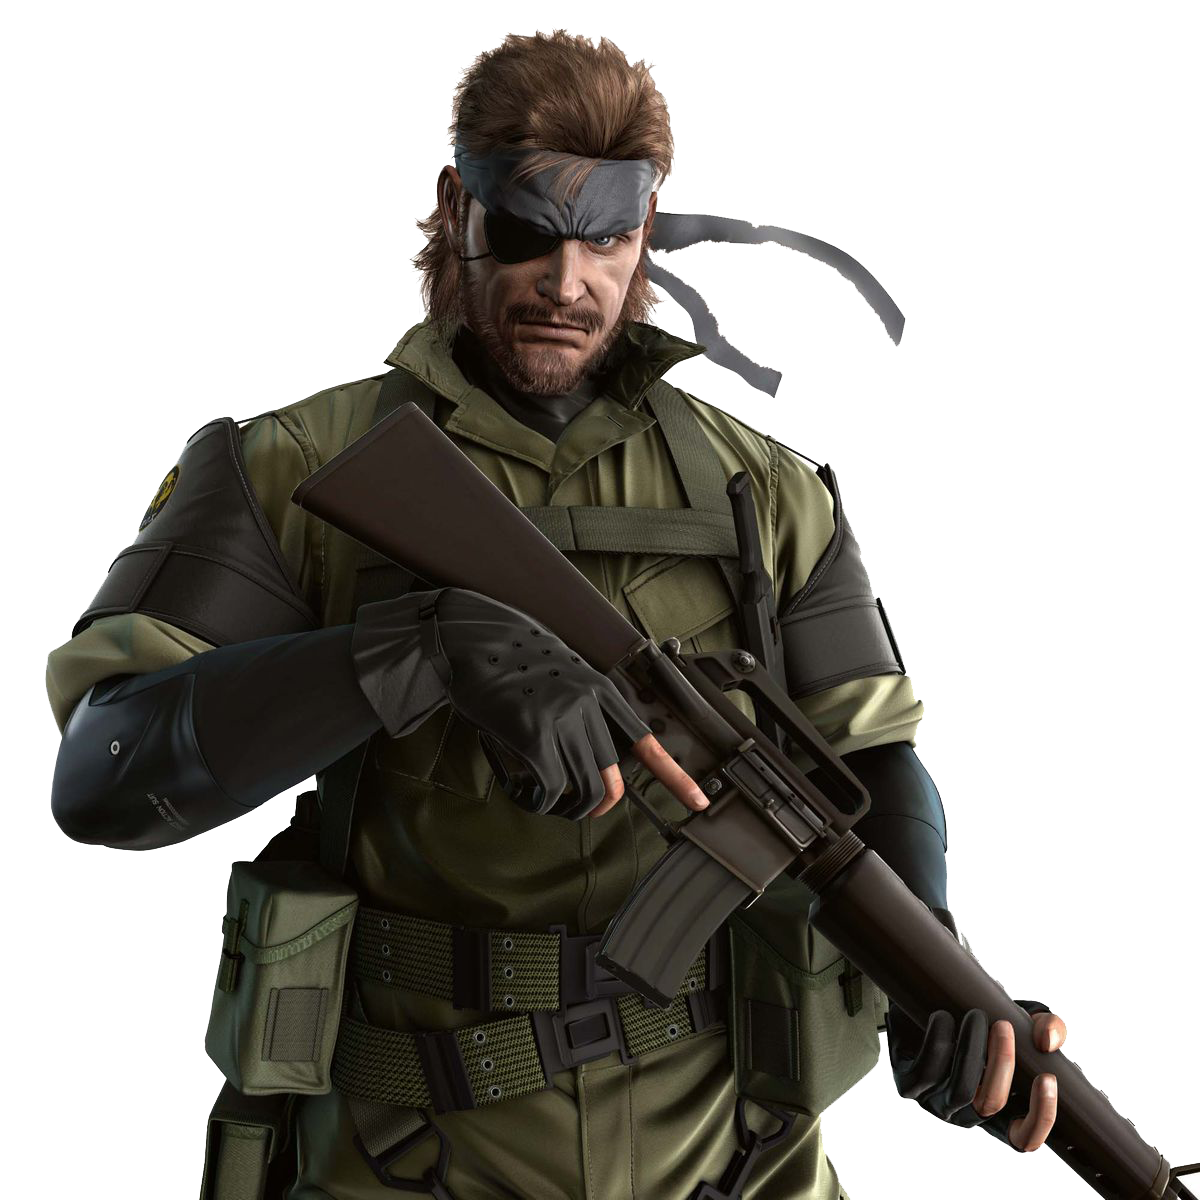 Download Solid Snake Image HQ PNG Image FreePNGImg.